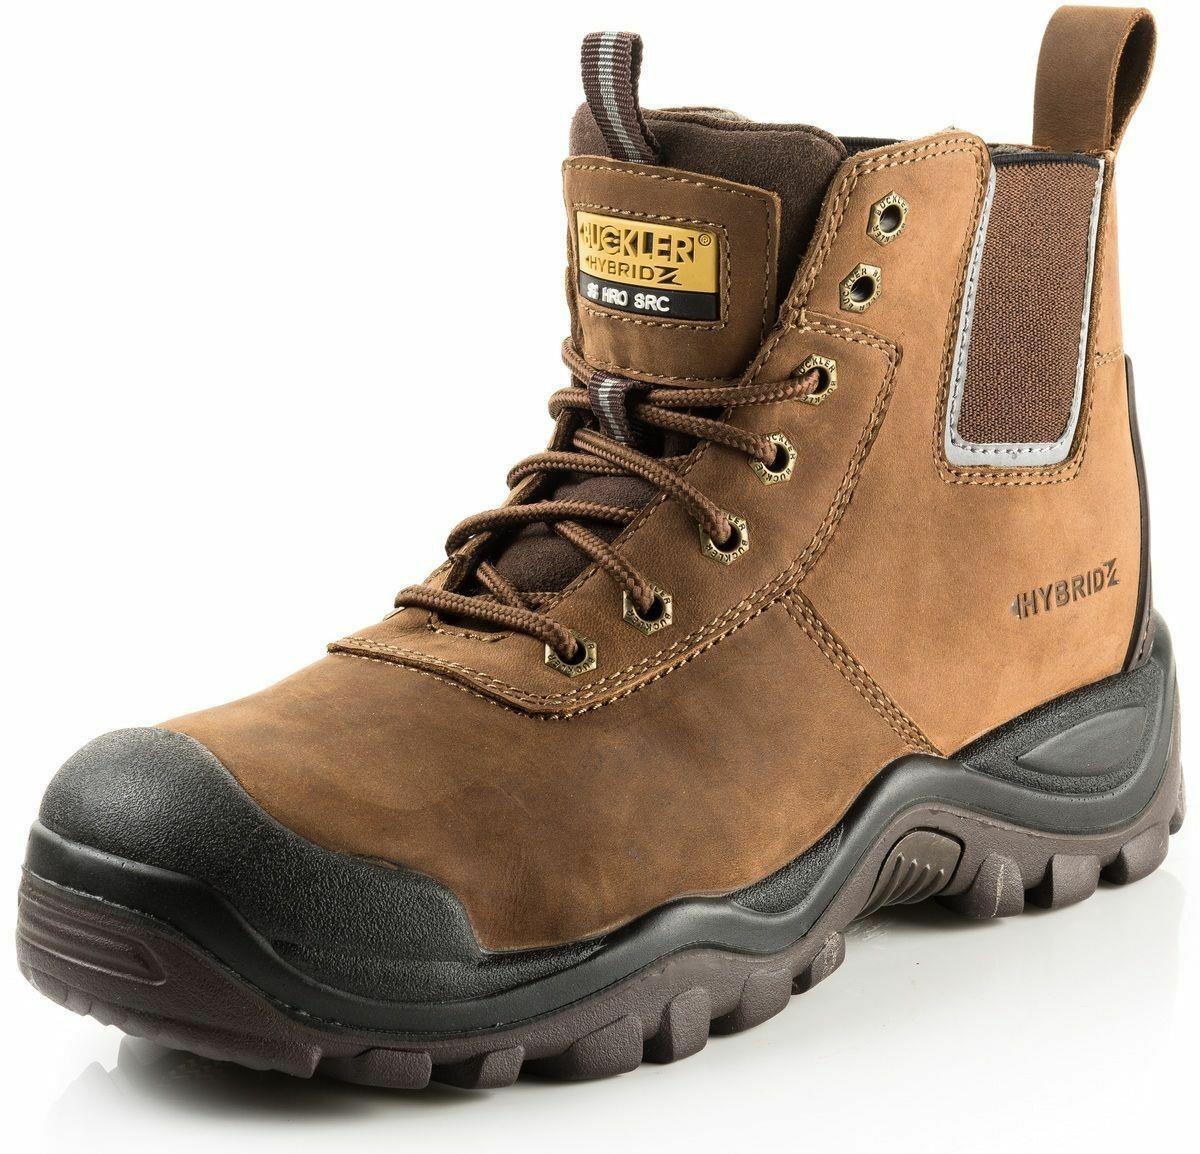 Buckbootz Hybridz S3 brown leather steel toe/midsole safety work boot #BHYB2BR